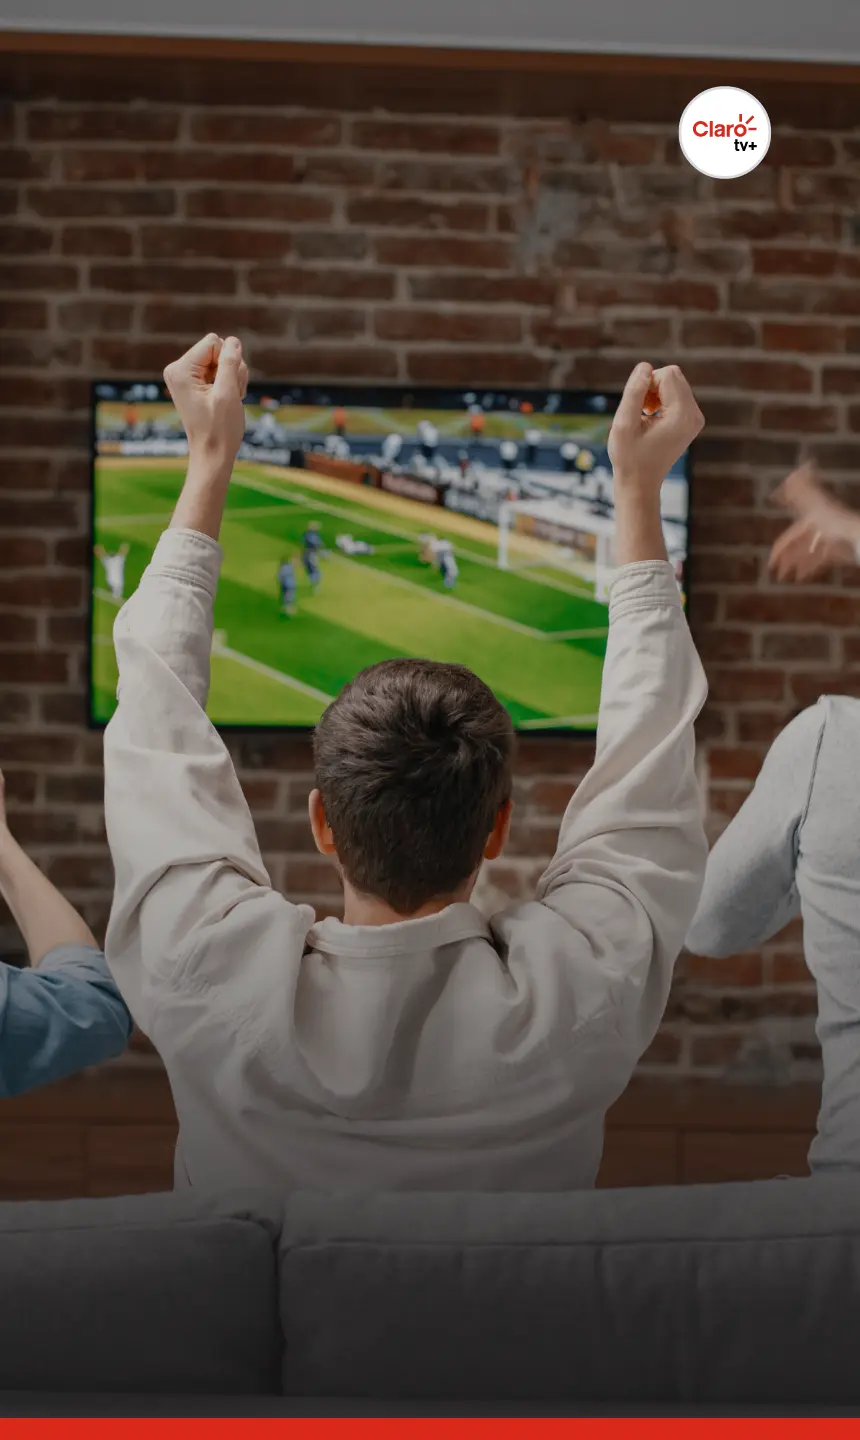 Futebol ao vivo: Saiba como assistir jogos de Futebol pela